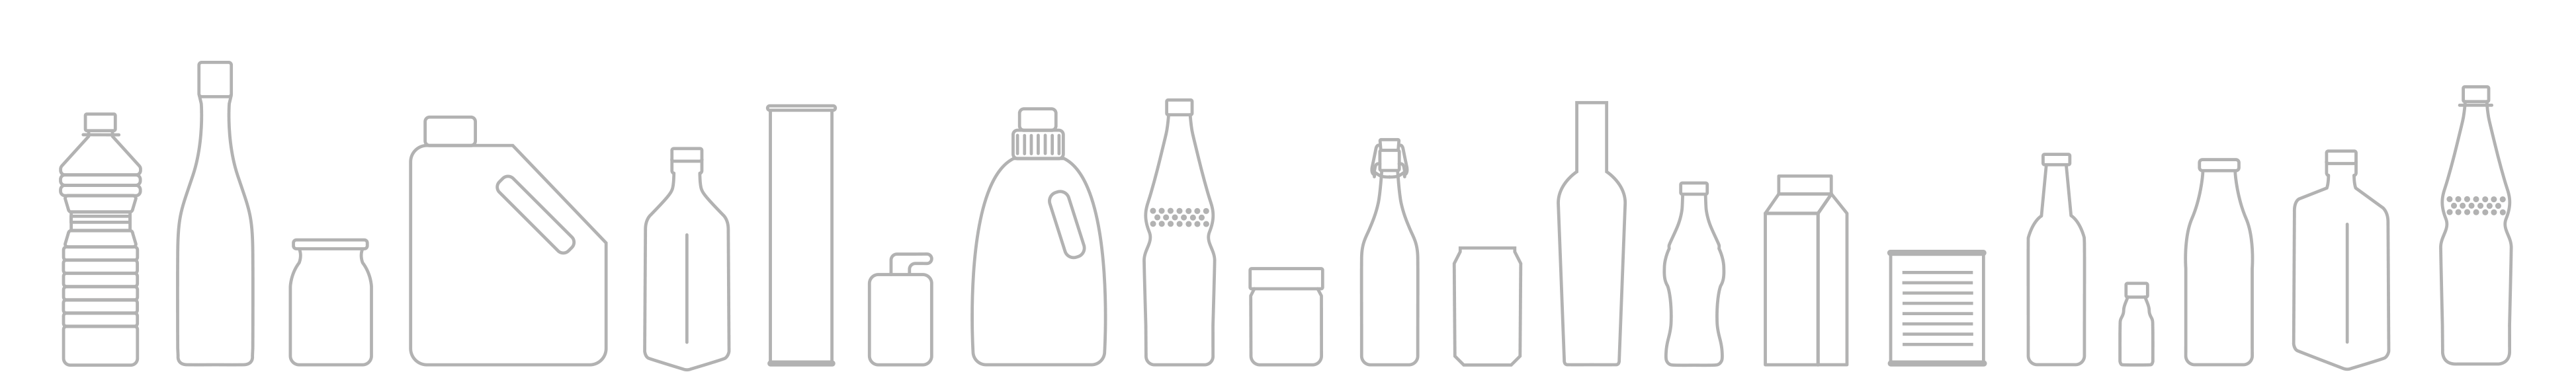 Fries zeichnungen aller Flaschen, die inspeziert werden können